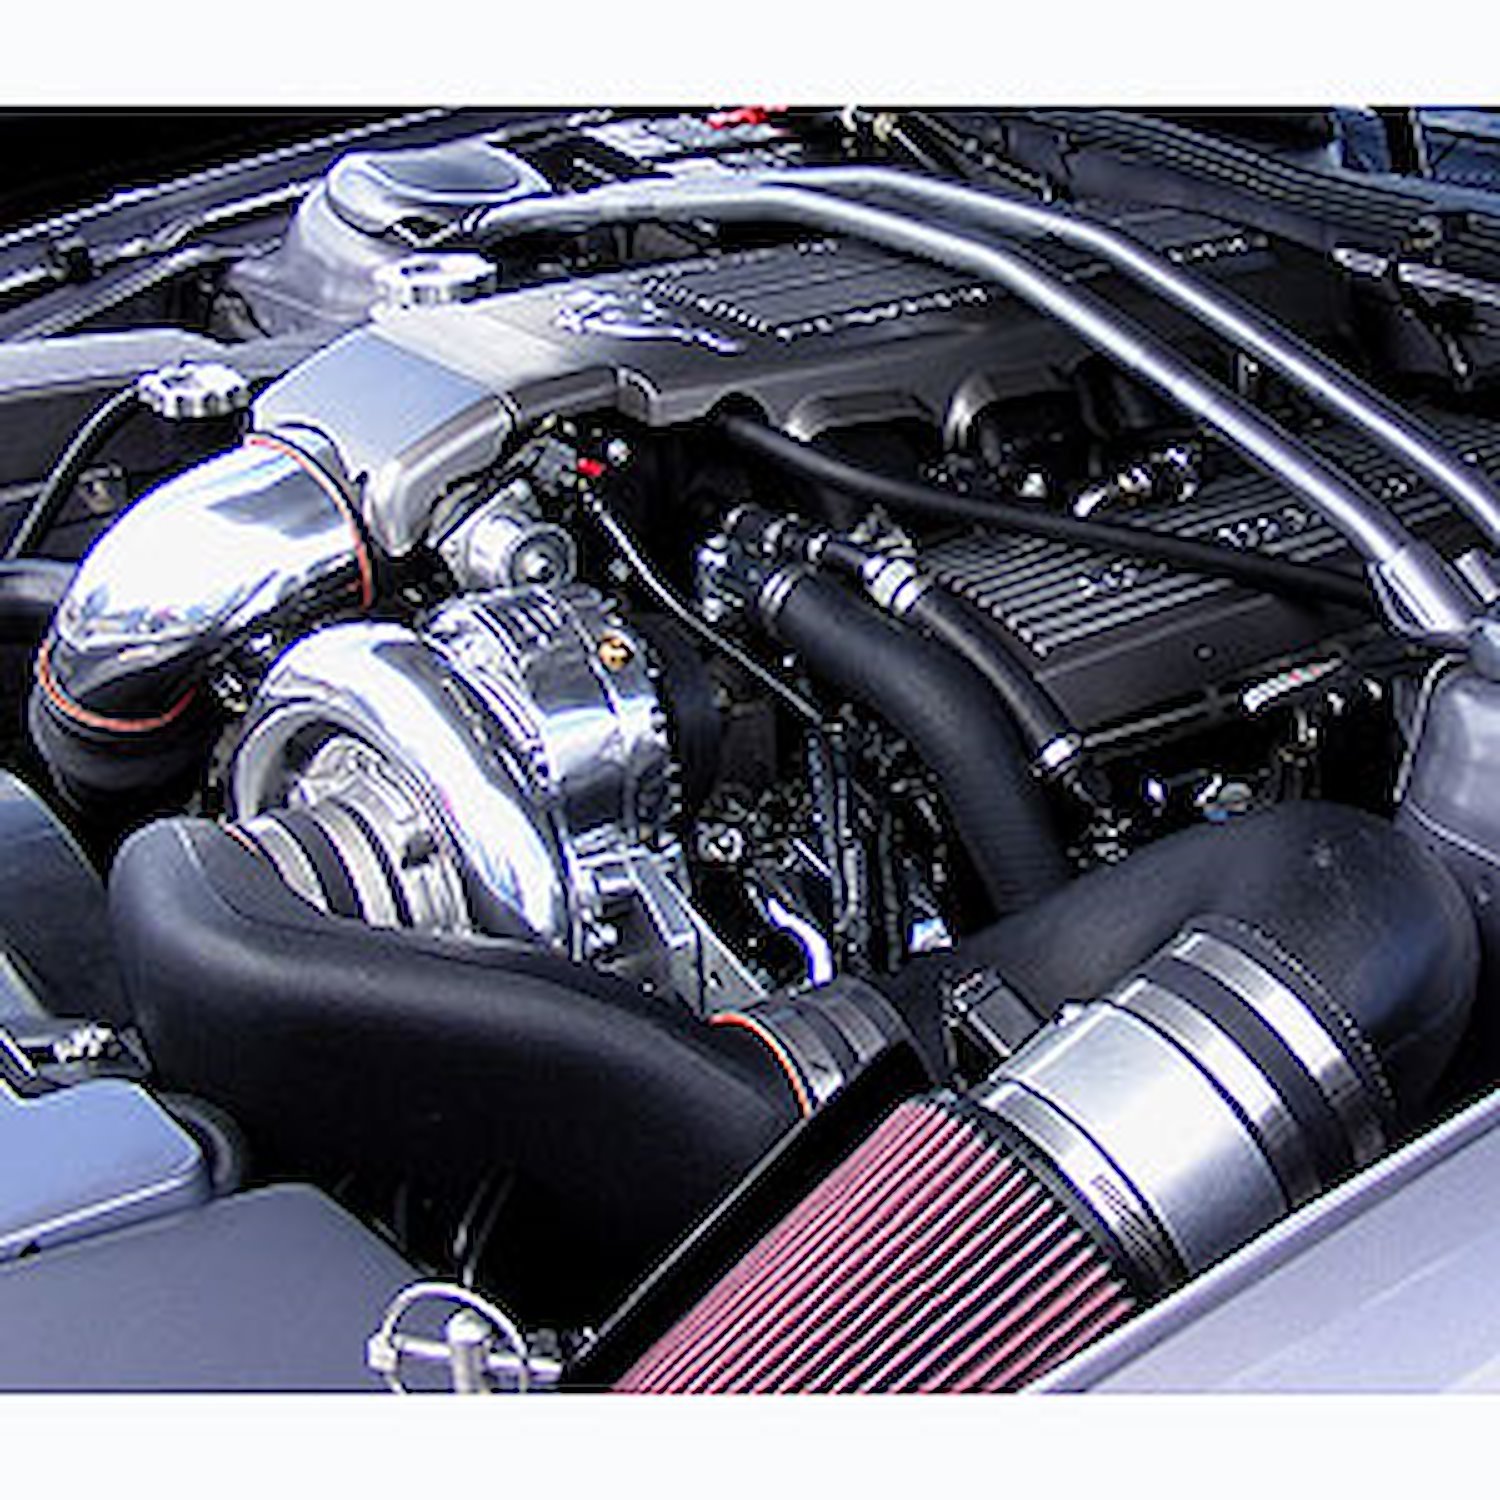 NOVI 1200 Tuner Supercharger System 2005-06 Mustang GT 4.6L